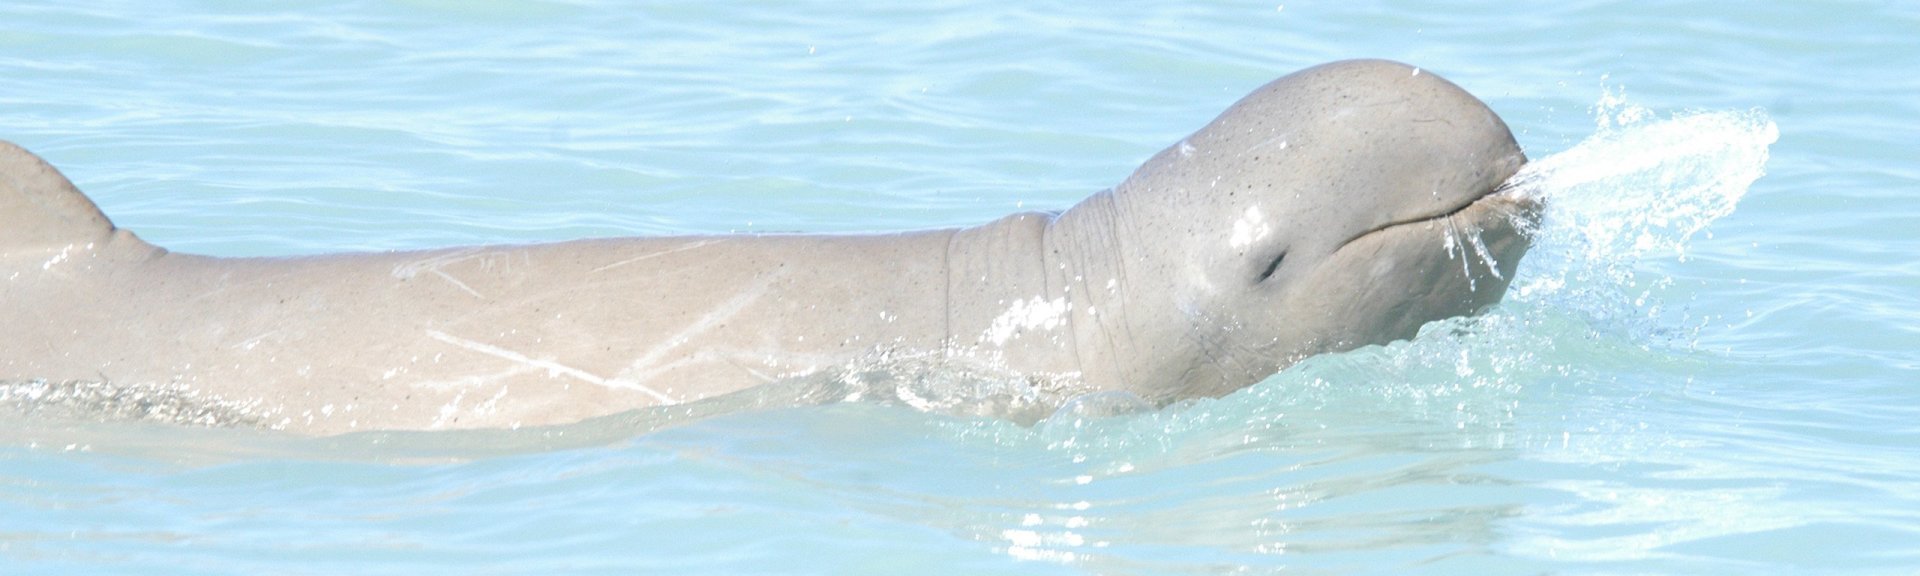 An Australian snubfin dolphin